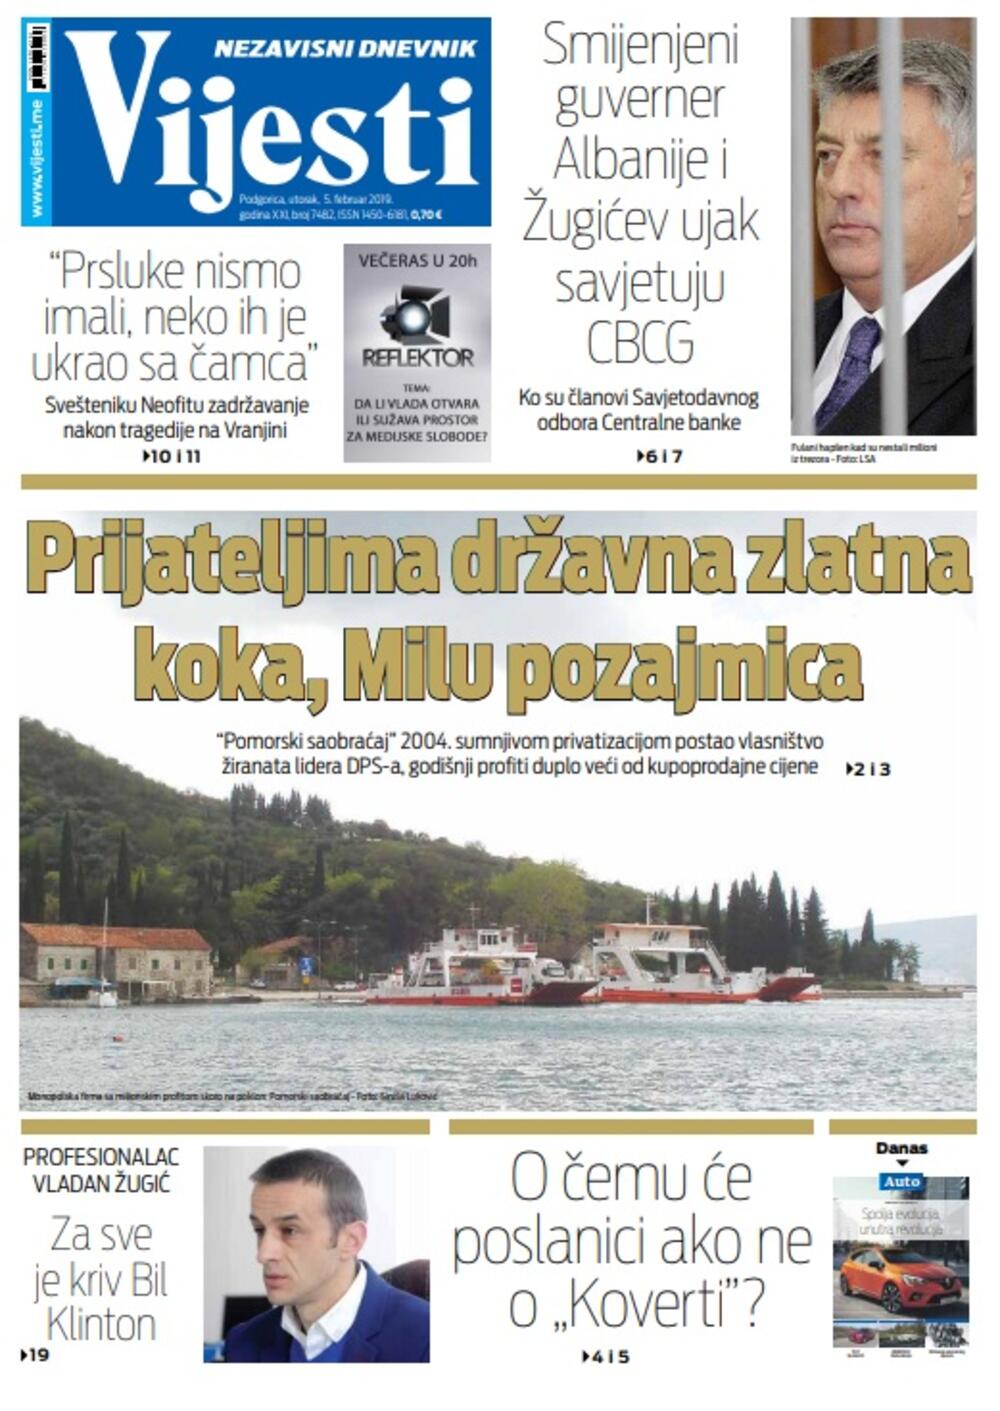 Naslovna strana "Vijesti" za 5. februar, Foto: Vijesti